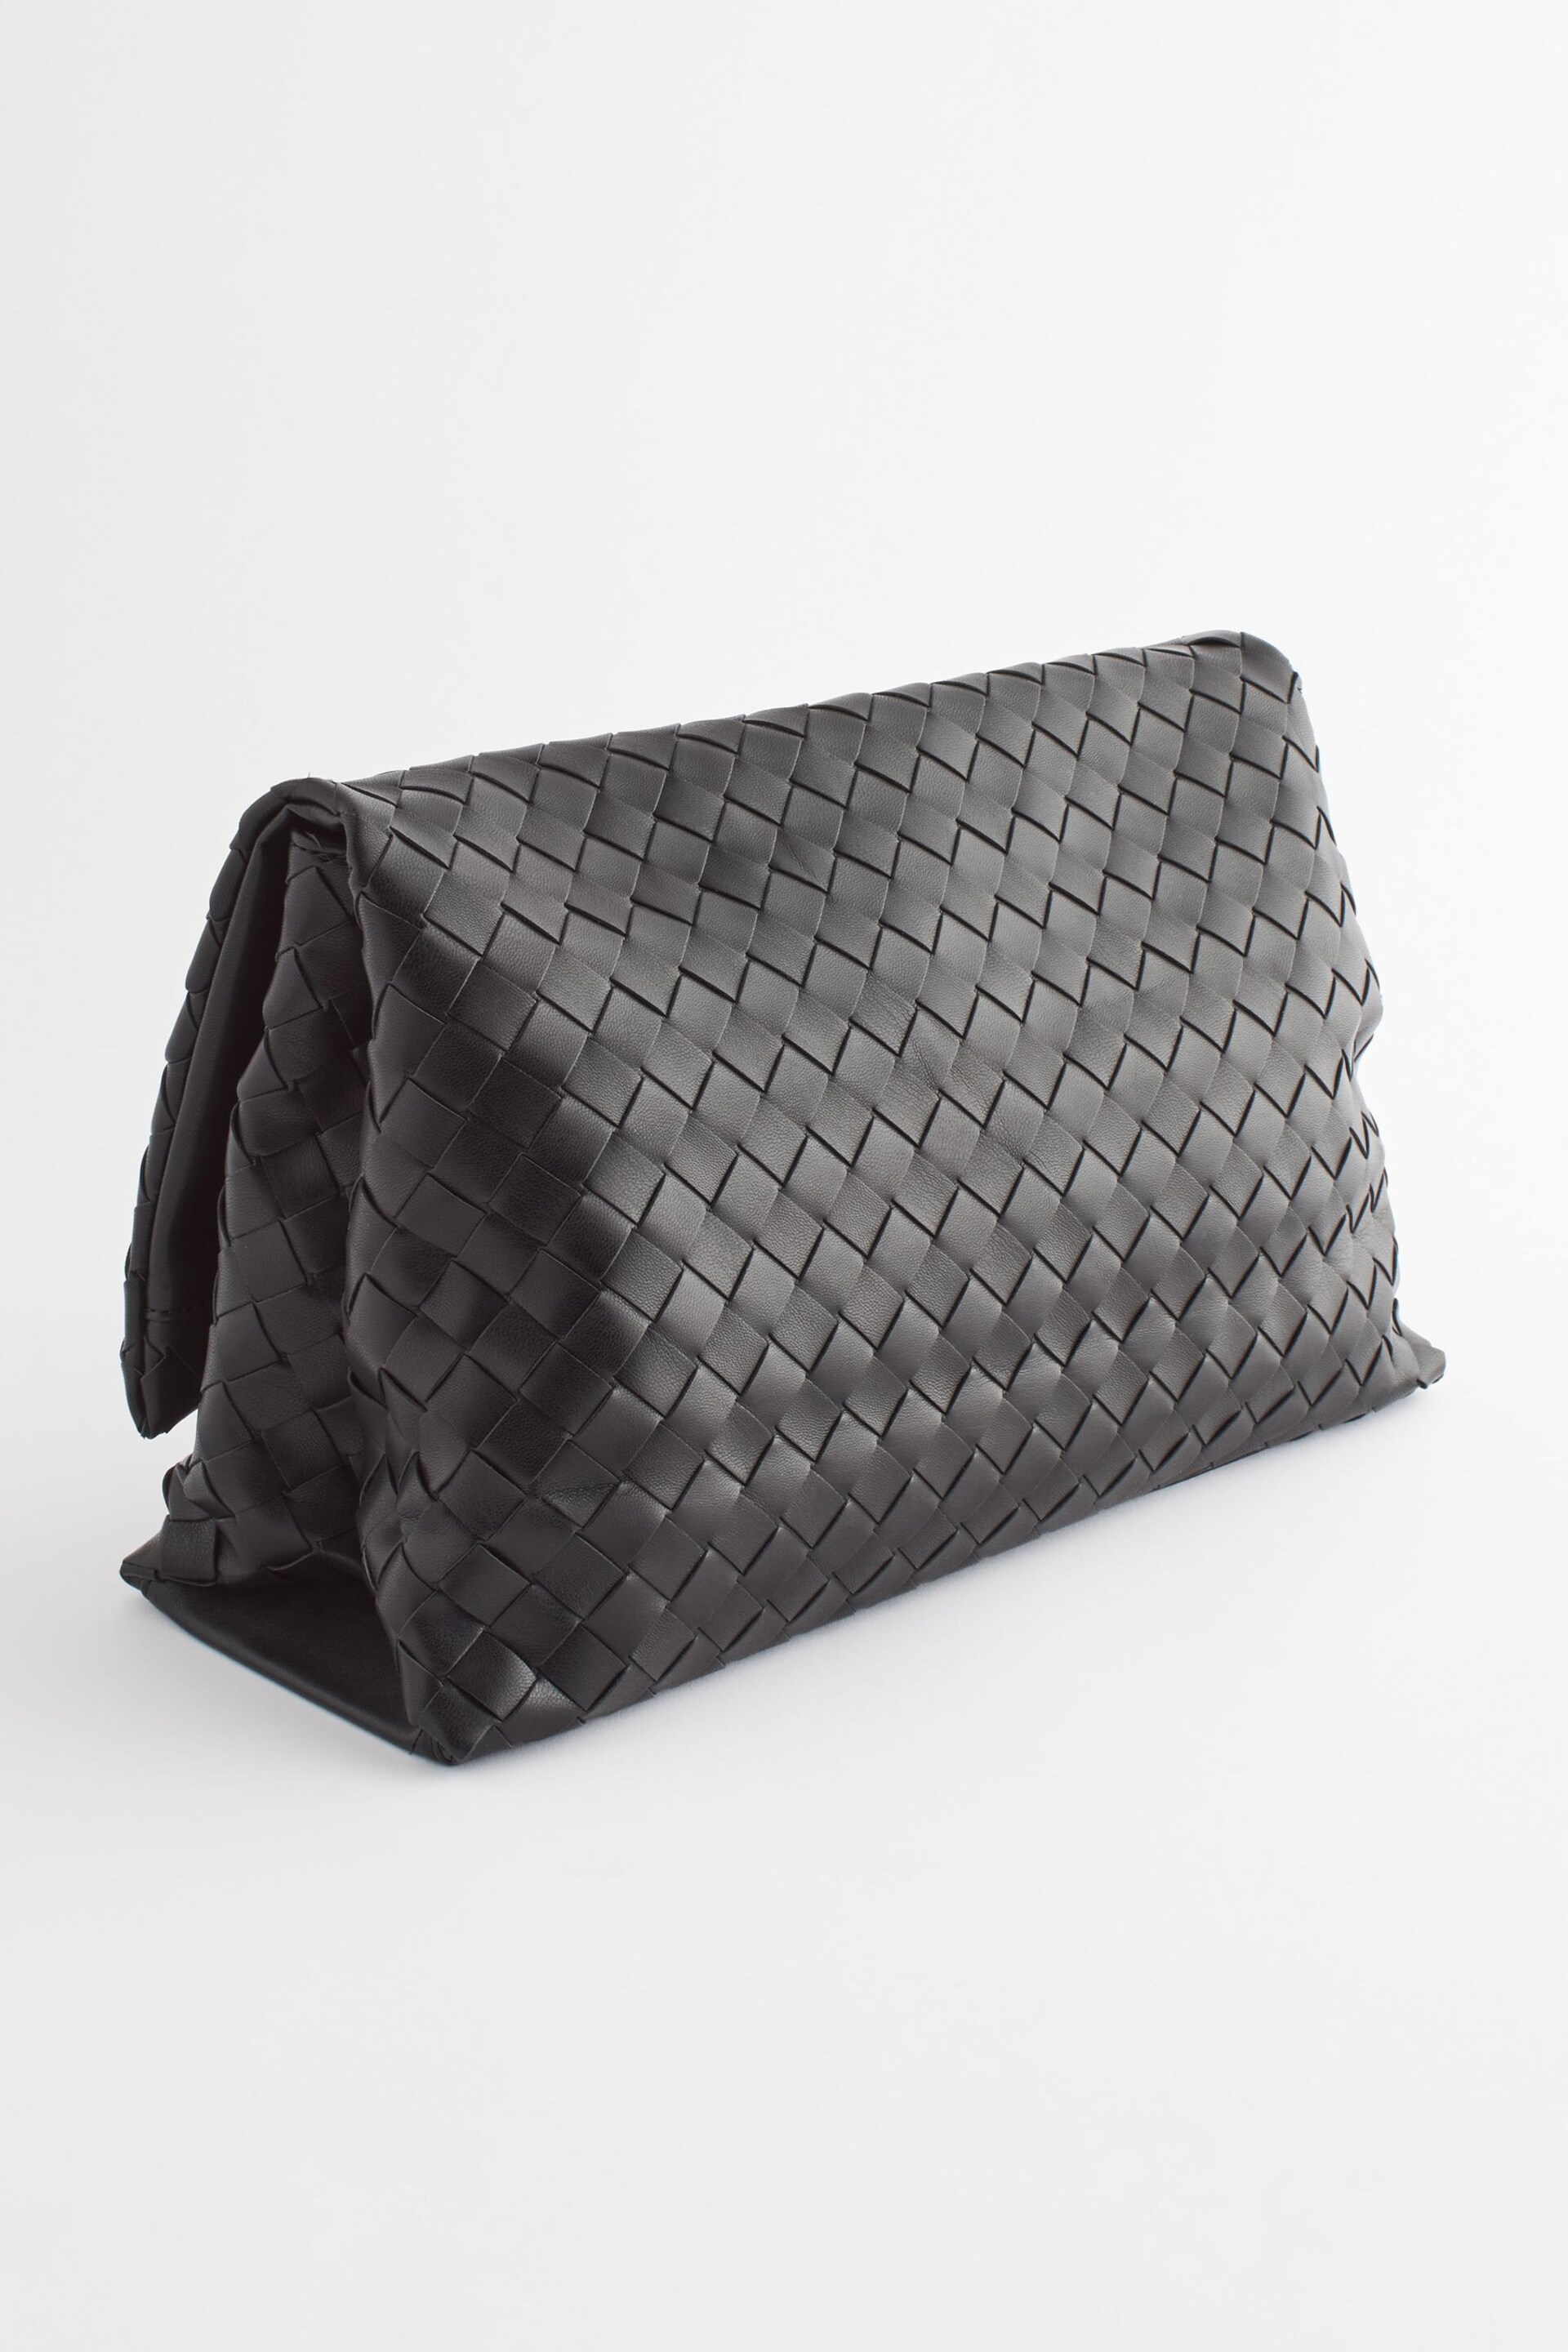 Black Weave Clutch Bag - Image 5 of 9